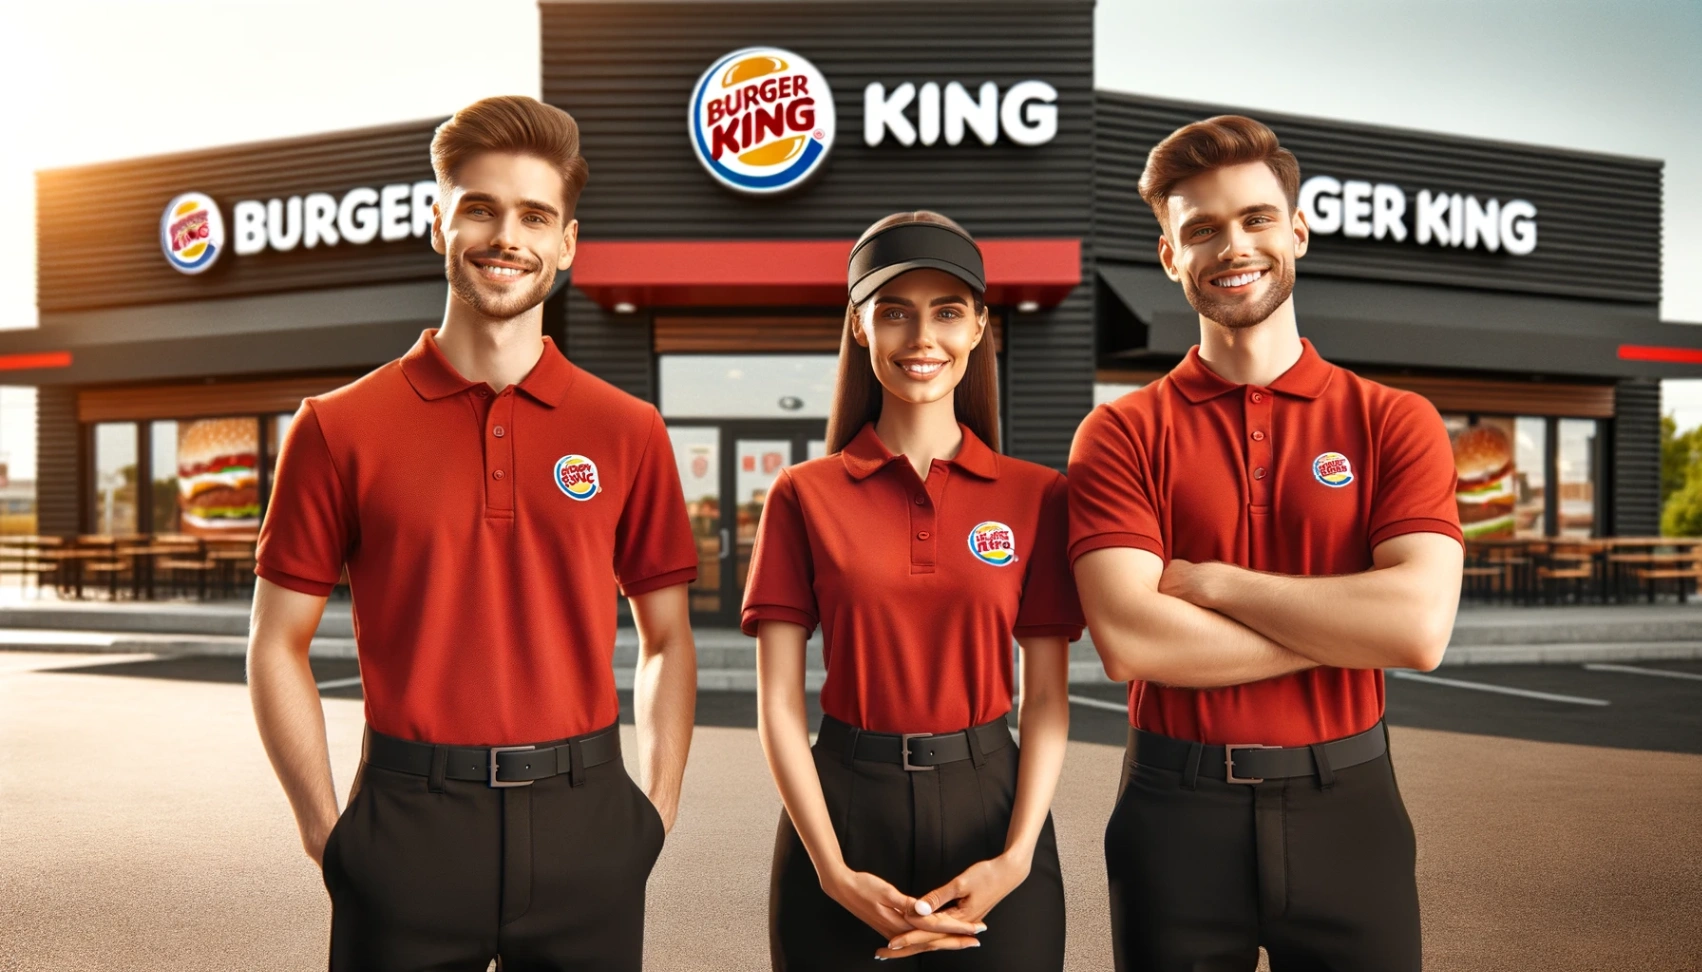 Práca v Burger King: Zjednodušené kroky pri prihlásení